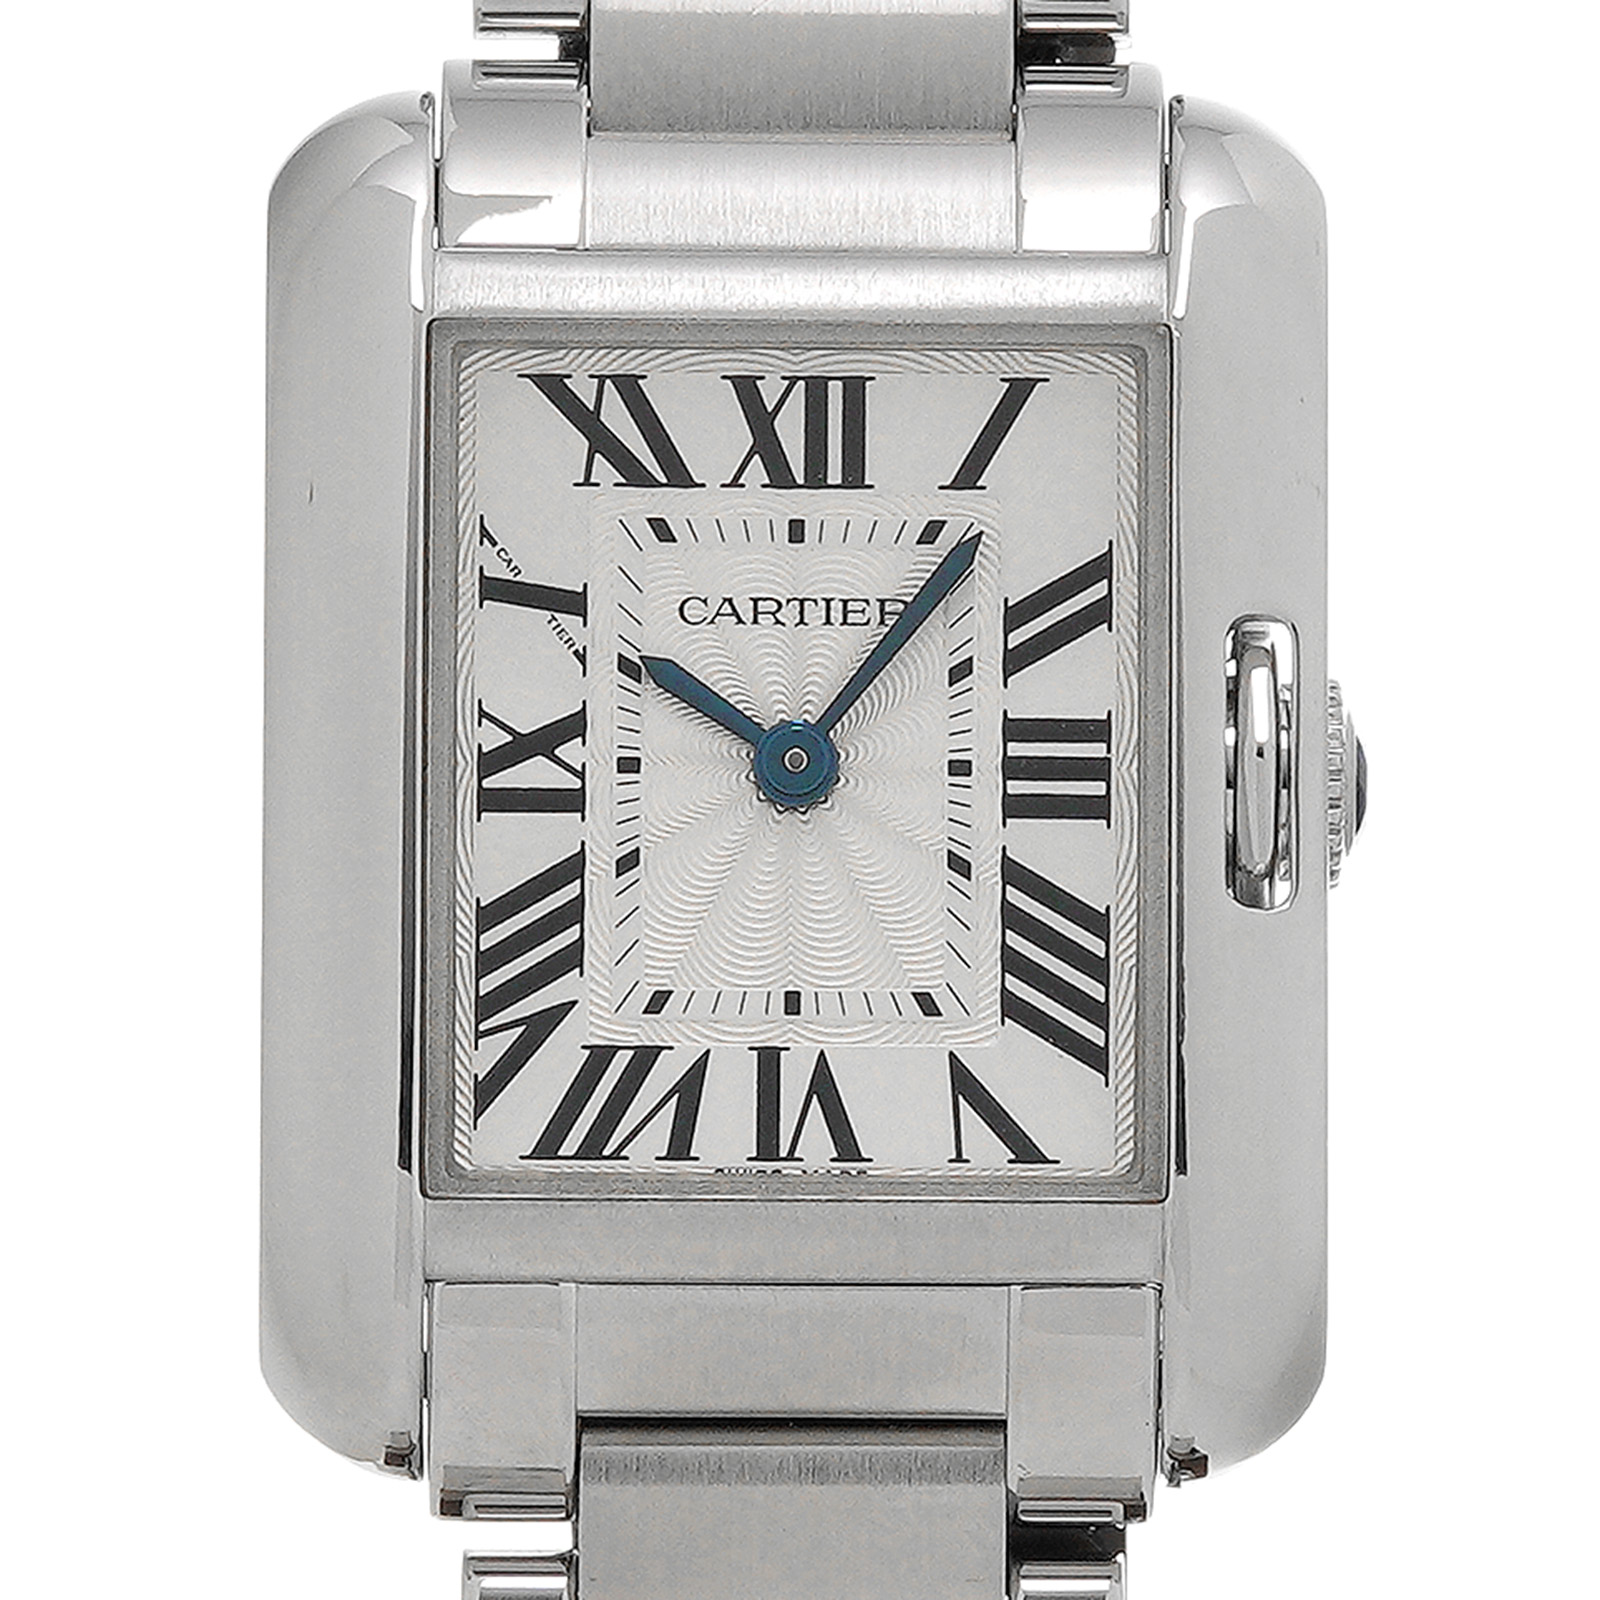 カルティエ / CARTIER タンク アングレーズ SM W5310022 シルバー レディース 時計 【中古】【wristwatch】